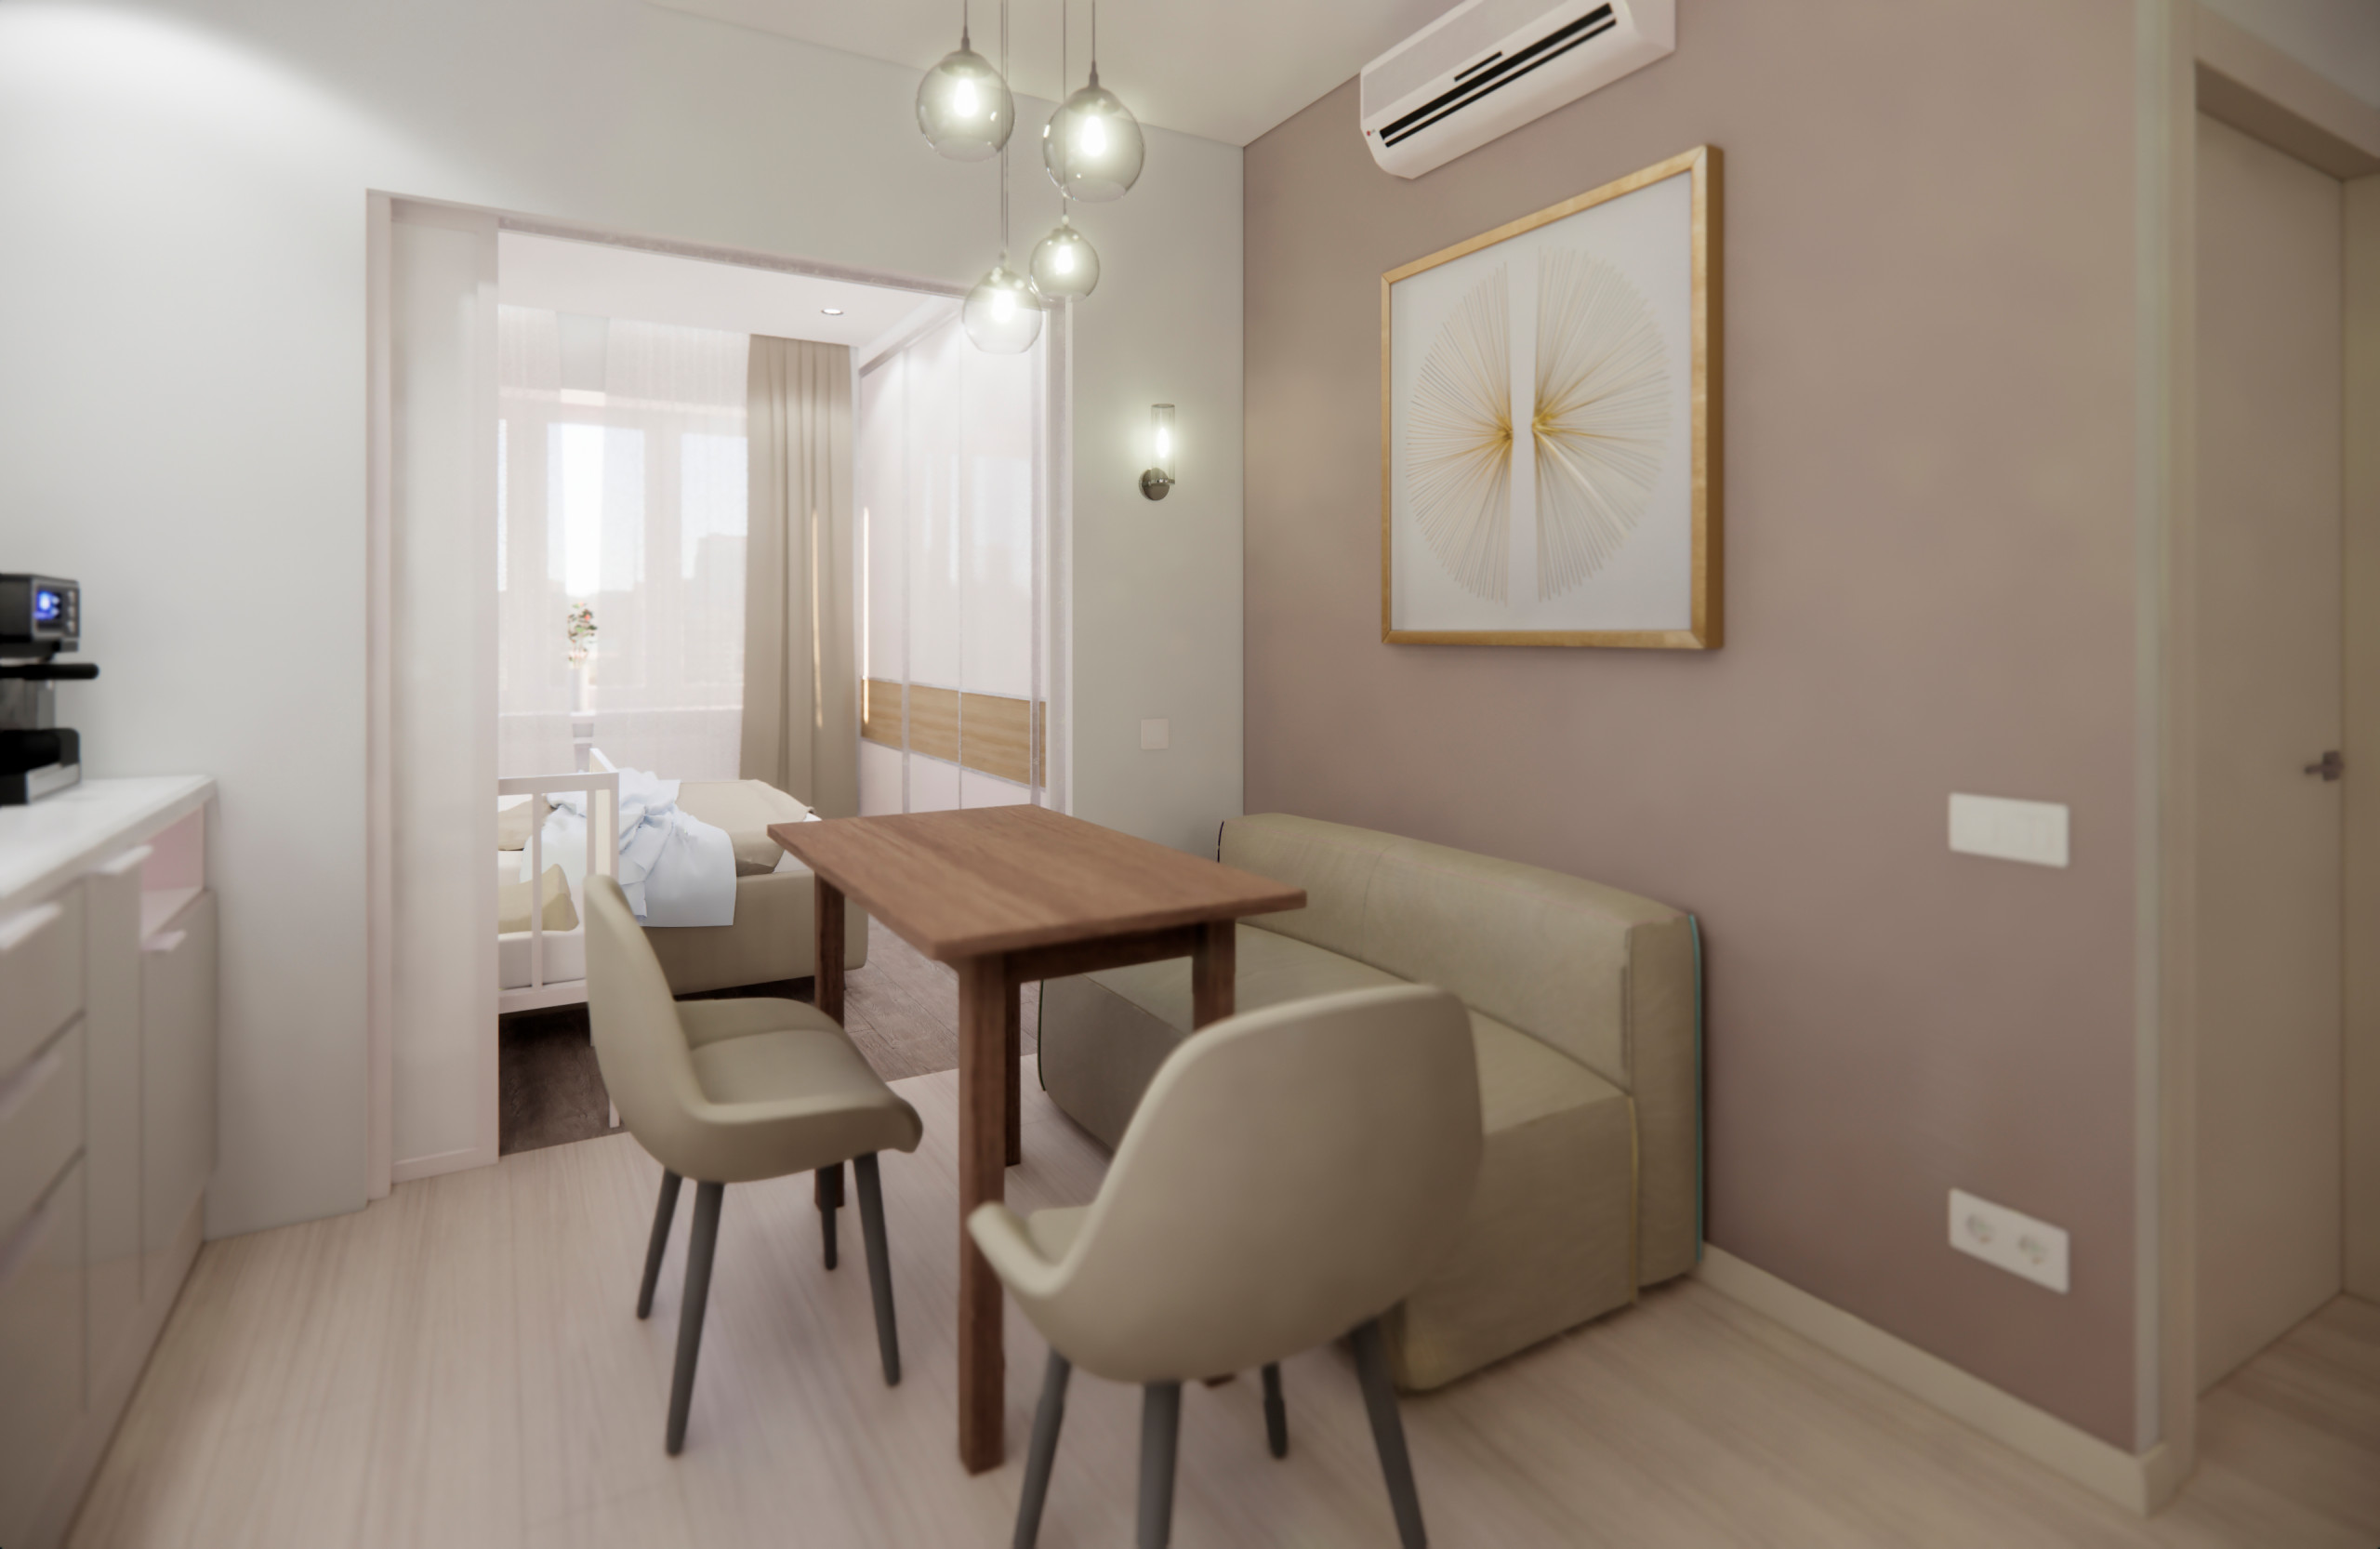 Квартира в минималистичном стиле в Пушкино - прихожая, кухня и гостиная